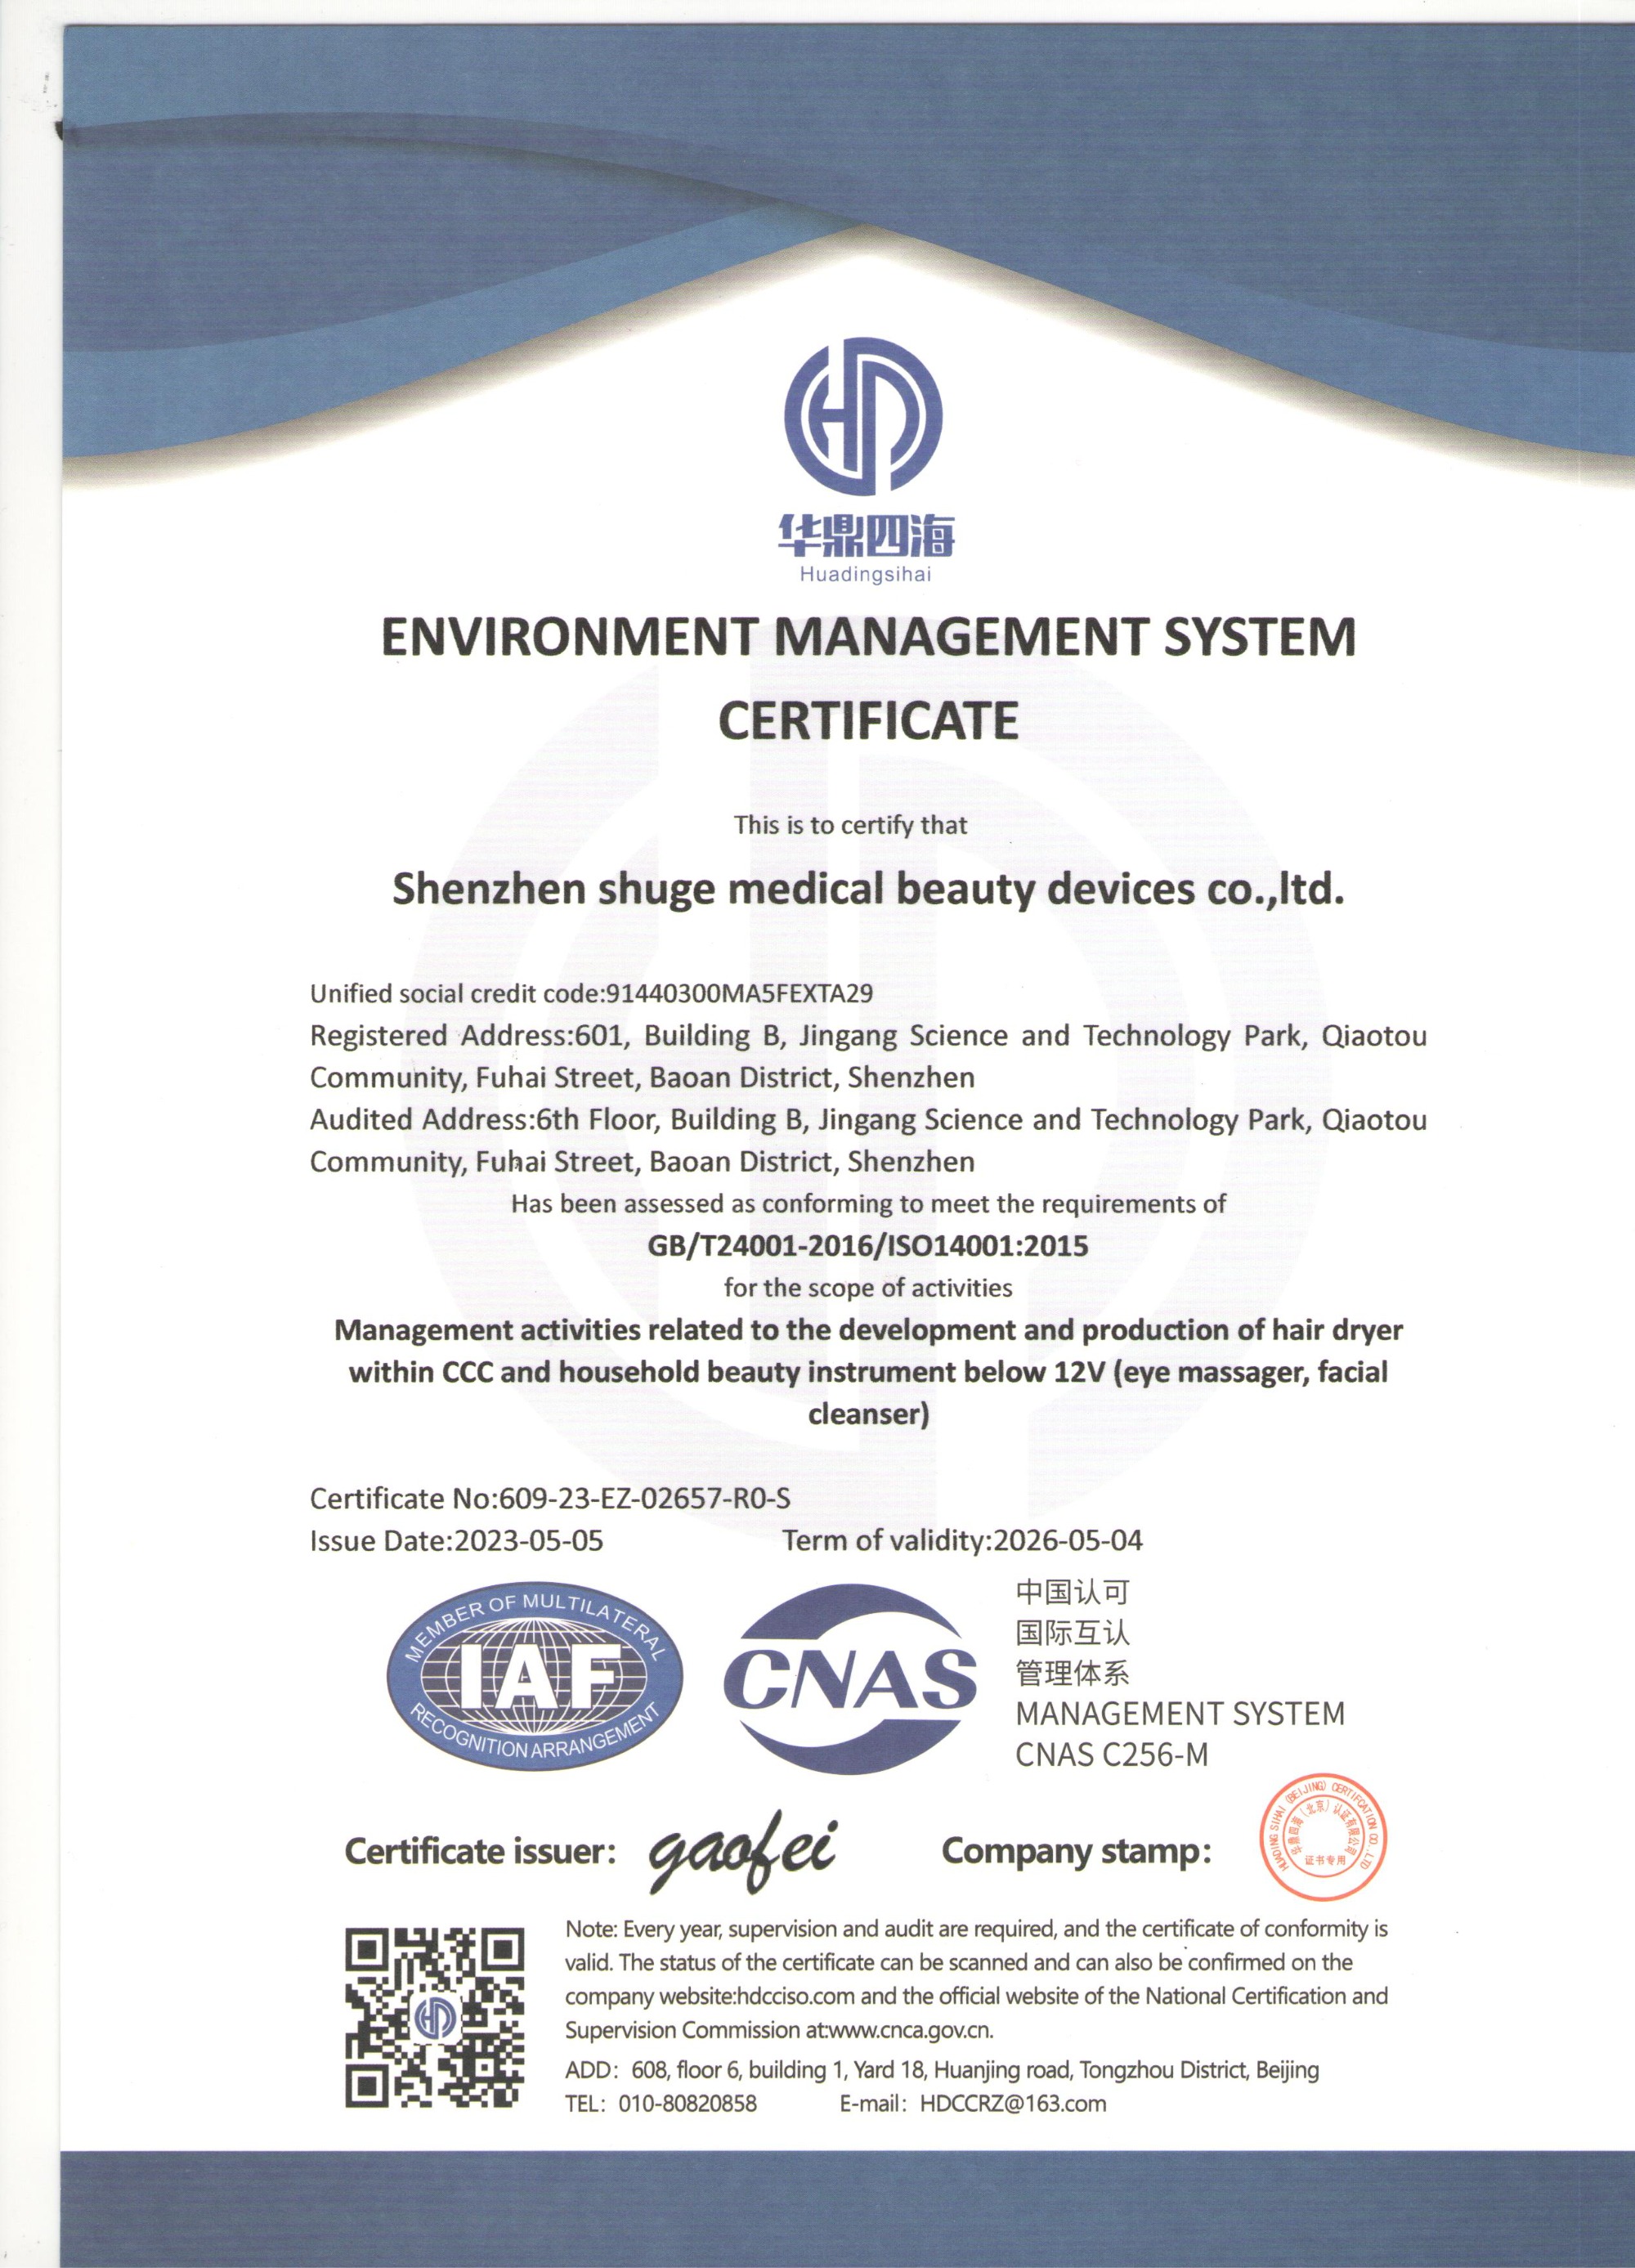 Got certificates for ISO45001,ISO14001